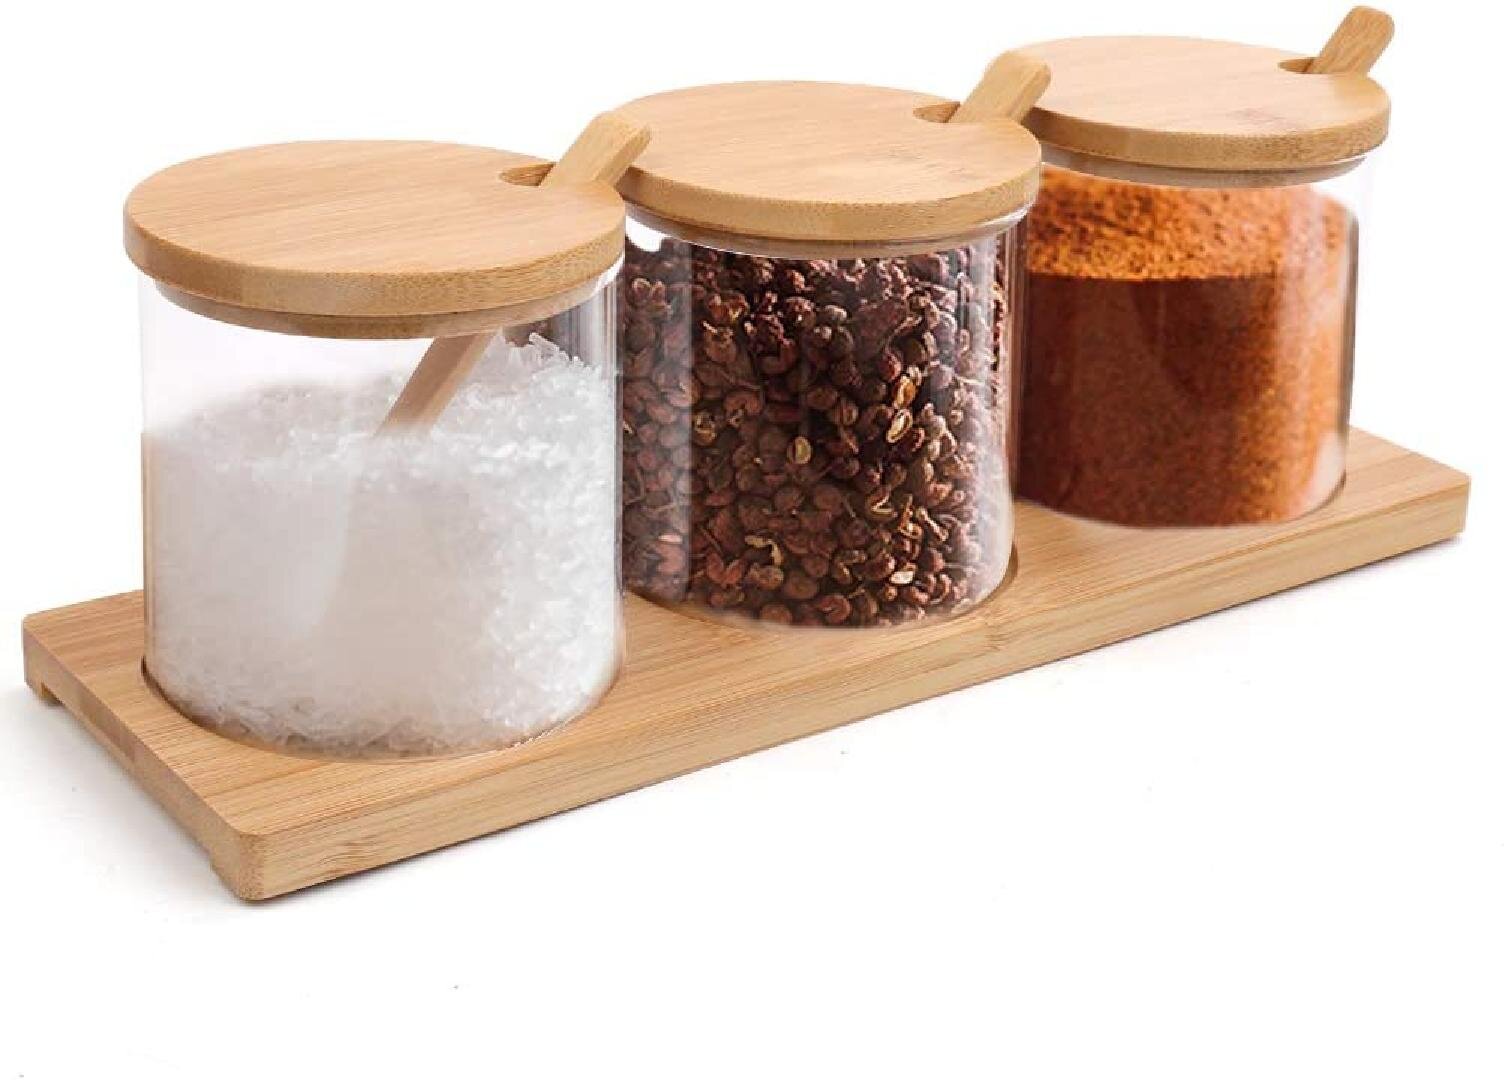 3pcs Seasoning Bottle Glass Durable Spice Pot Salt Jar Pepper Shaker for Kitchen 